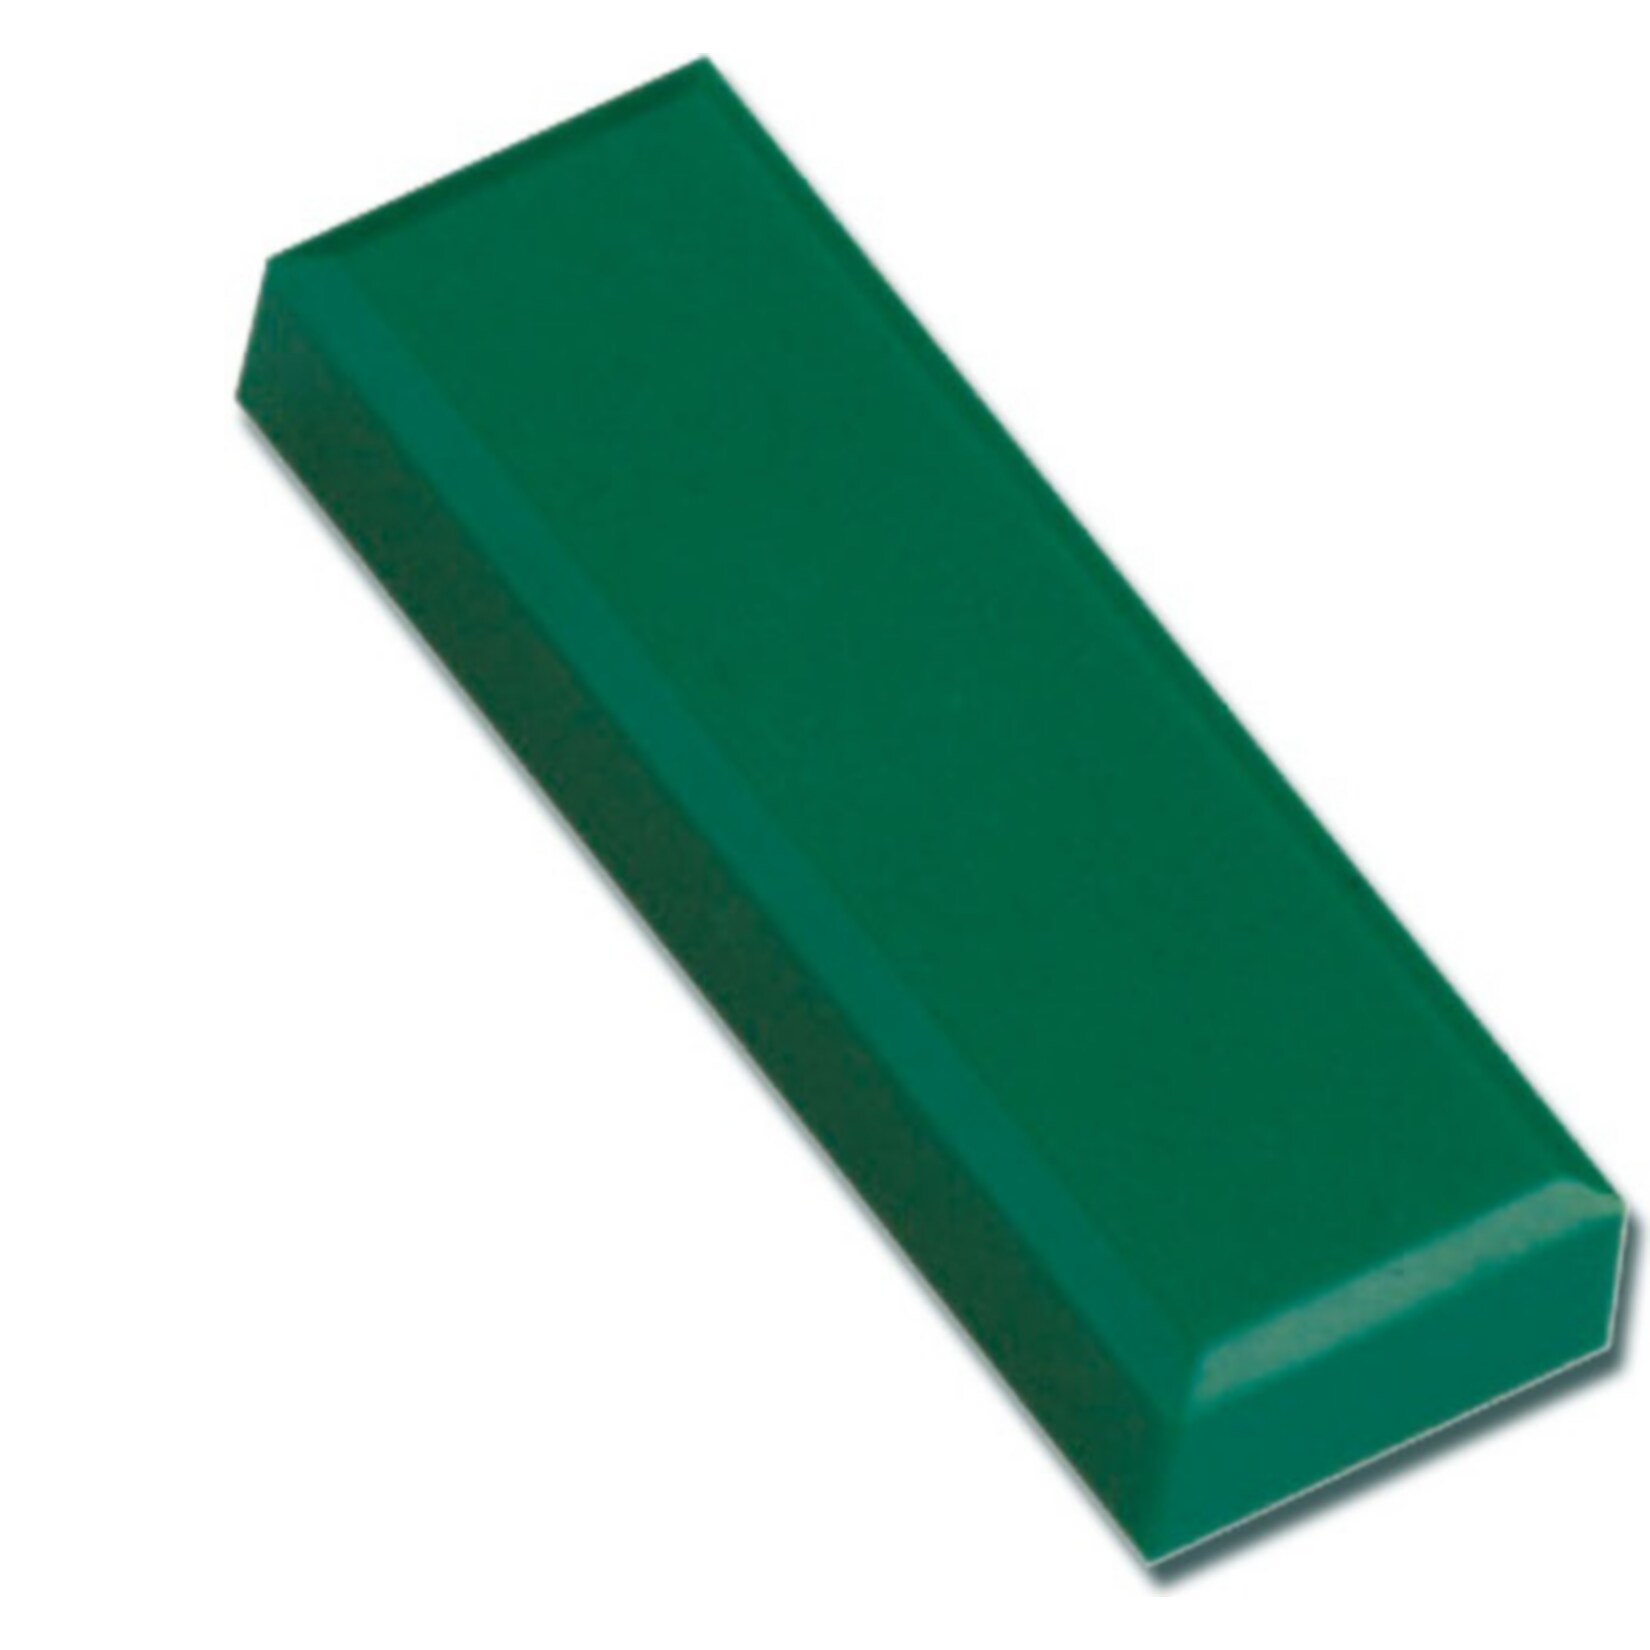 MAUL Facetterand-Magnet MAULpro, 53 x 18 x 10 mm, 1 kg Haftkraft, 20 St./Set - grün